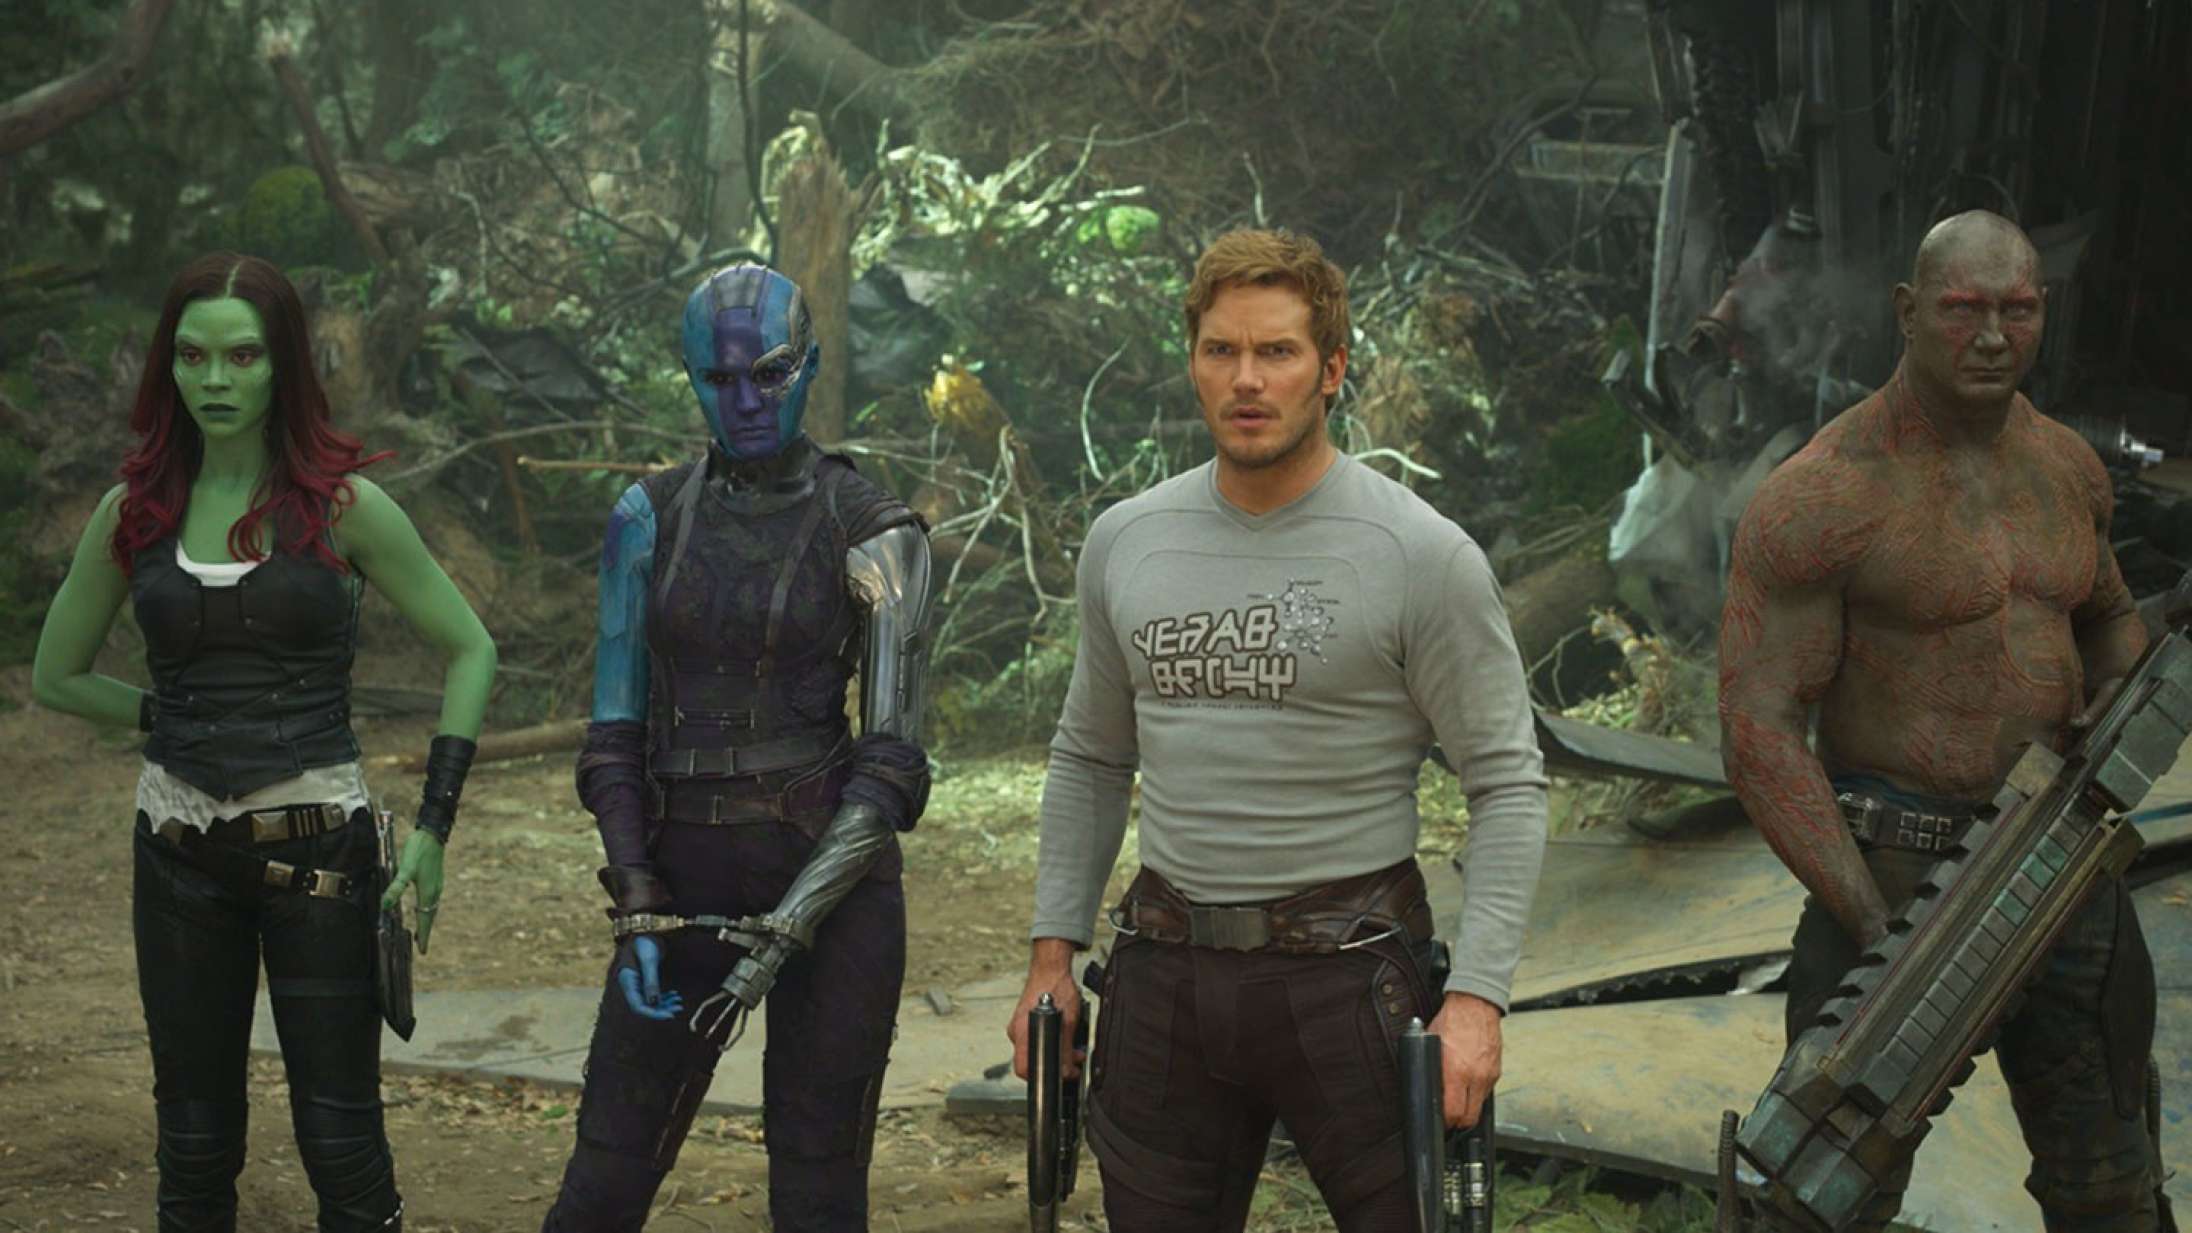 Efter Jodie Fosters angreb på superheltefilm: ‘Guardians of the Galaxy’-instruktør svarer igen på Twitter